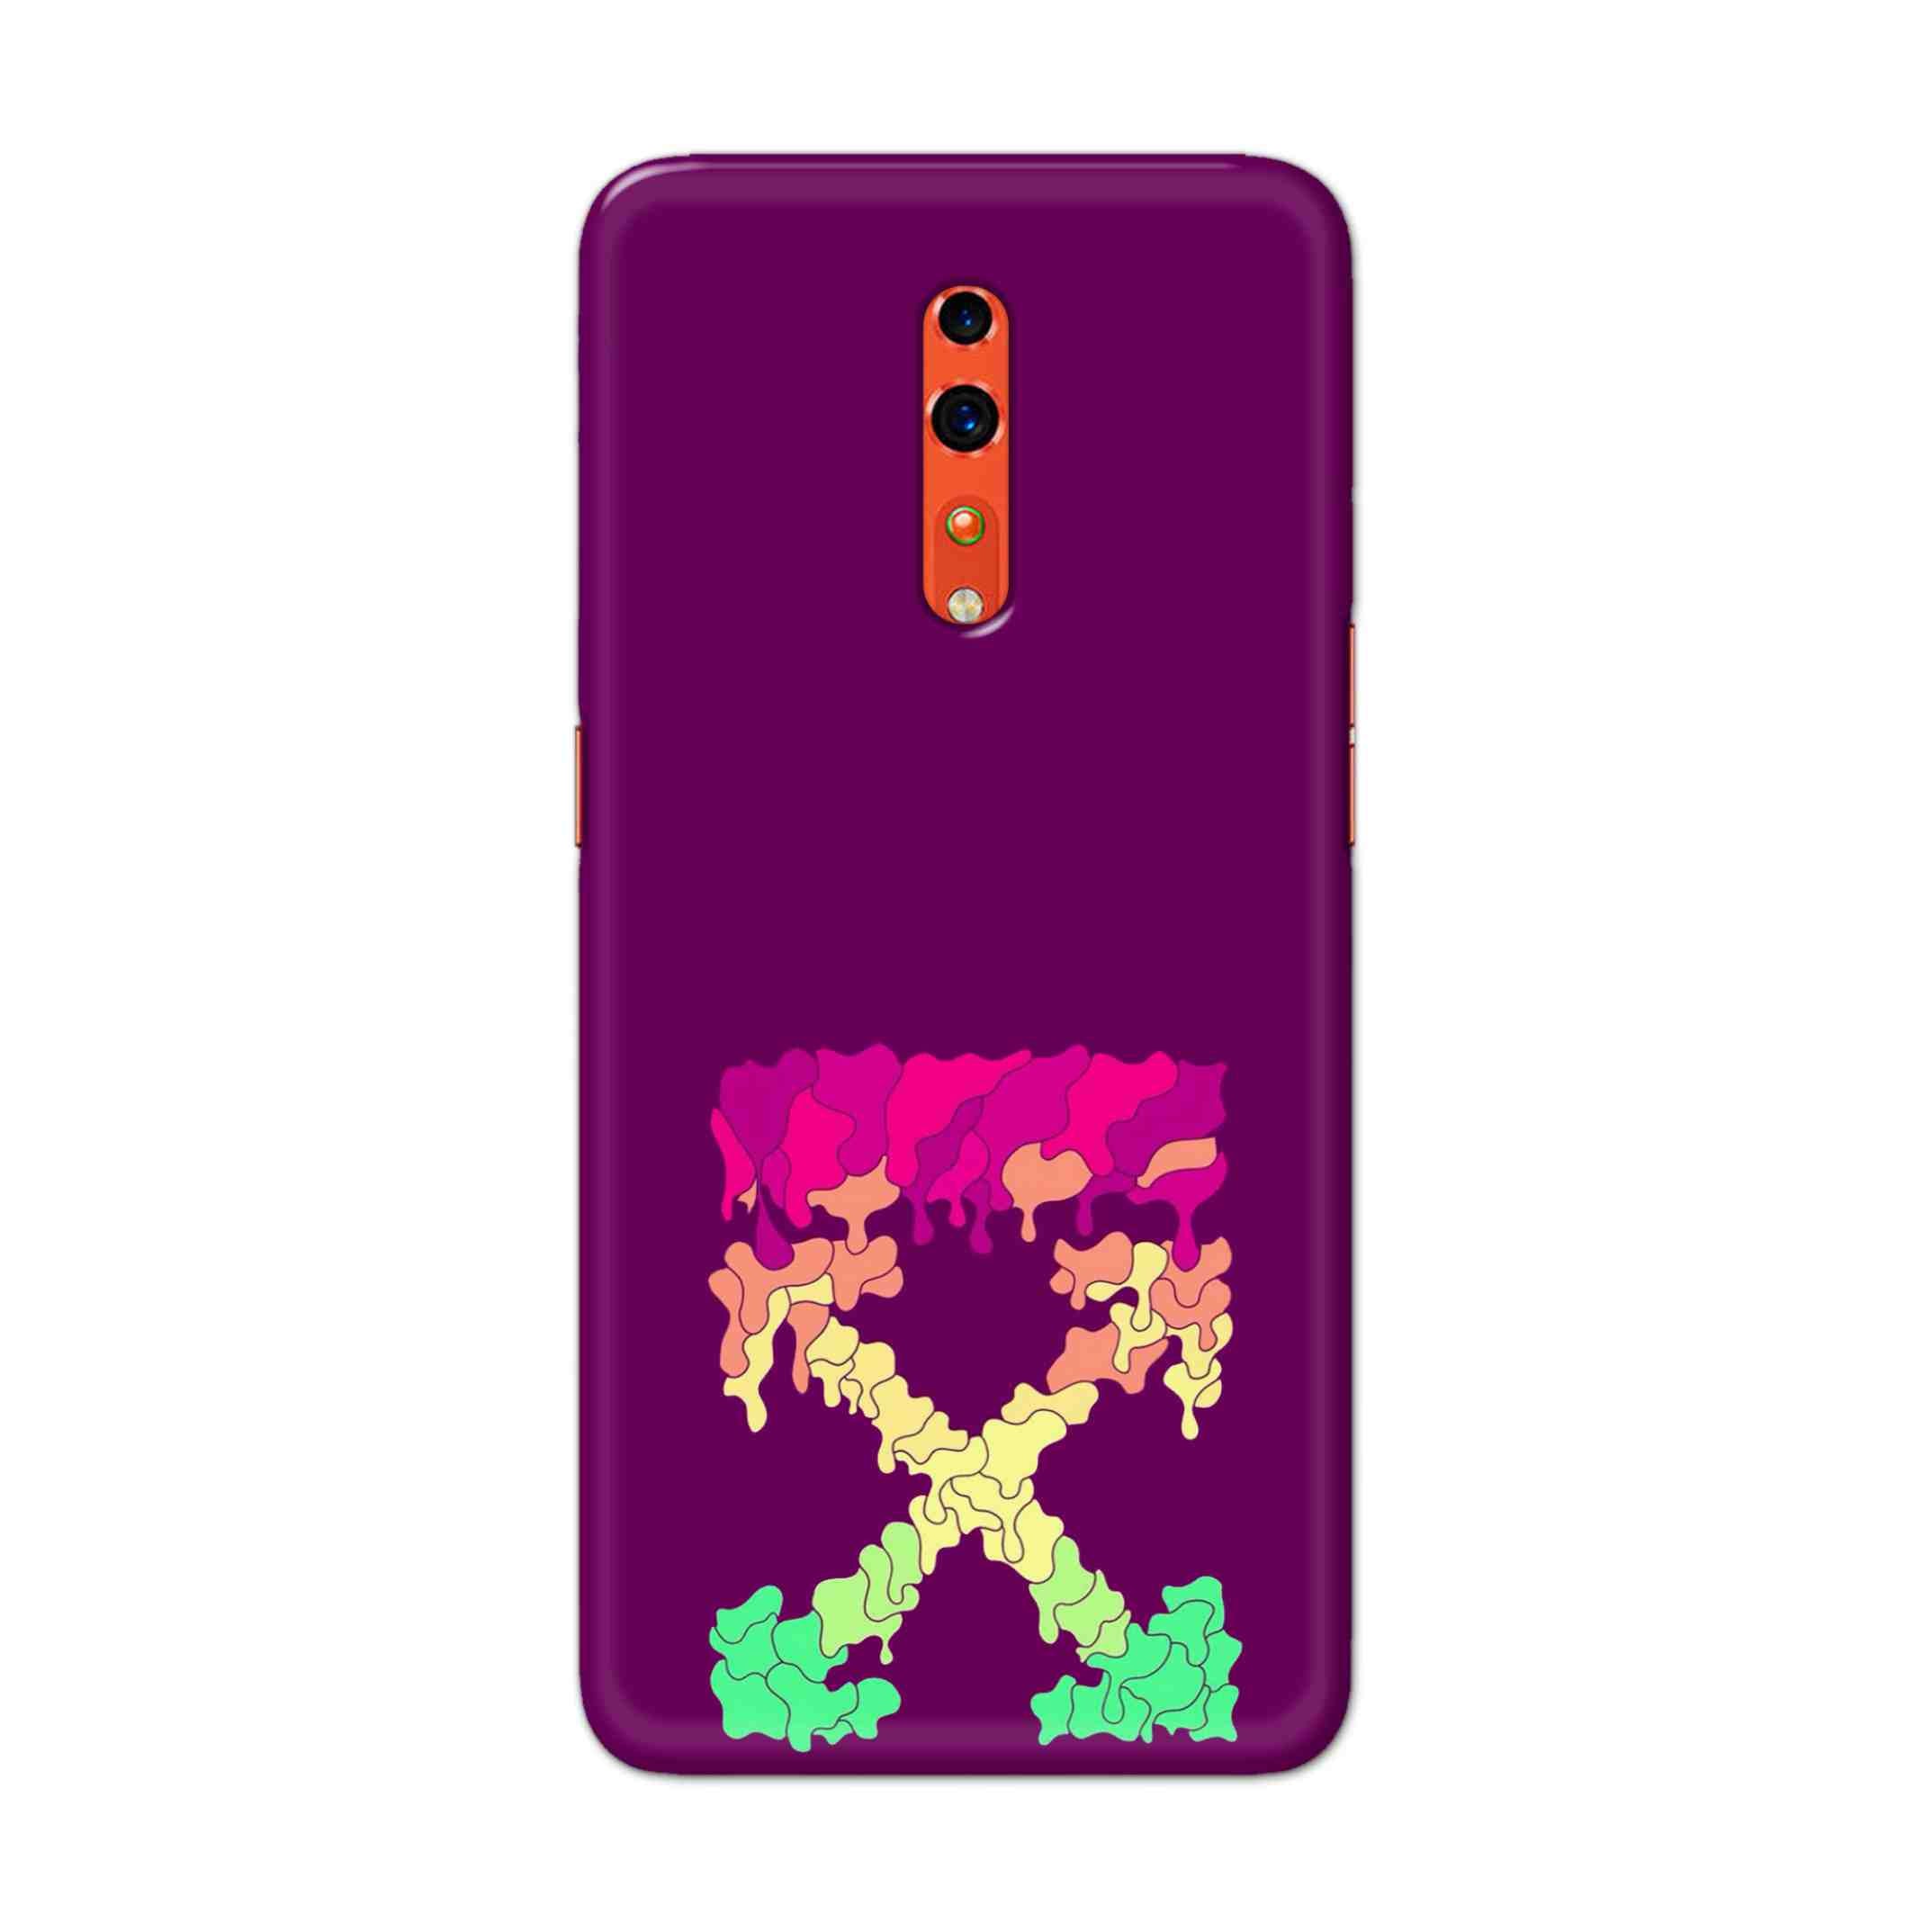 Buy X.O Hard Back Mobile Phone Case Cover For OPPO Reno Z Online